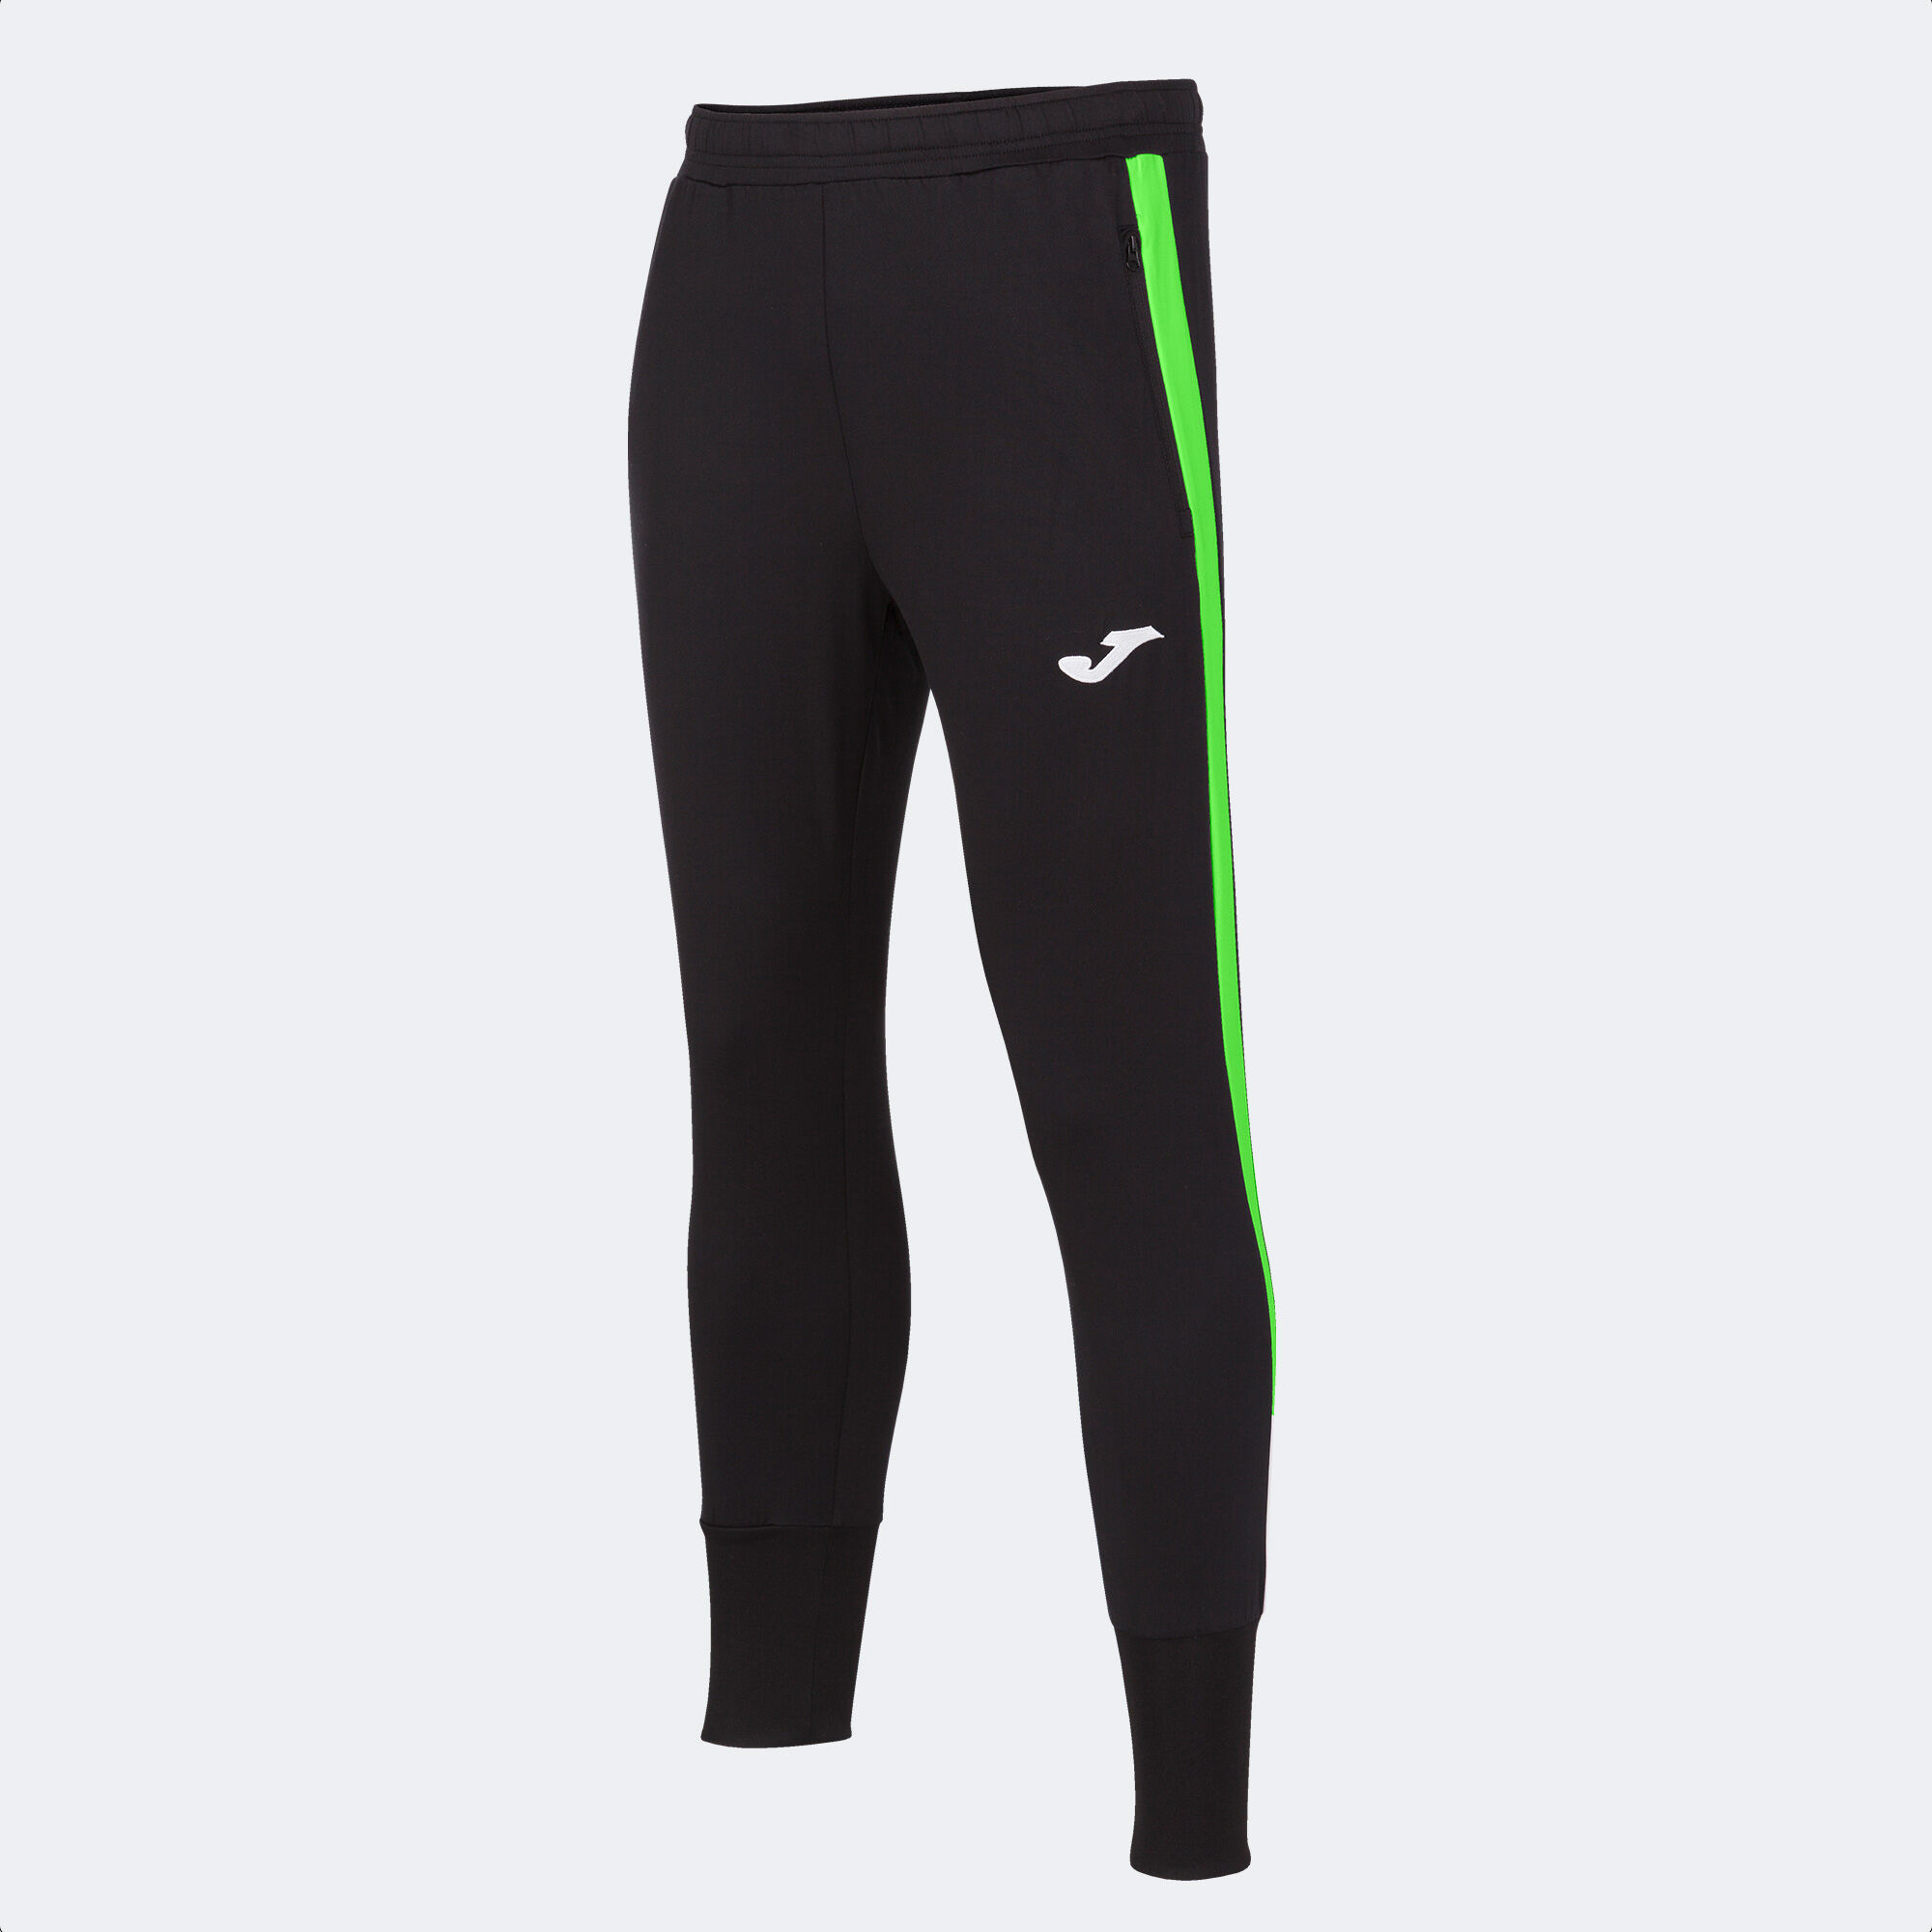 Pantalone lungo uomo Advance nero verde fluorescente